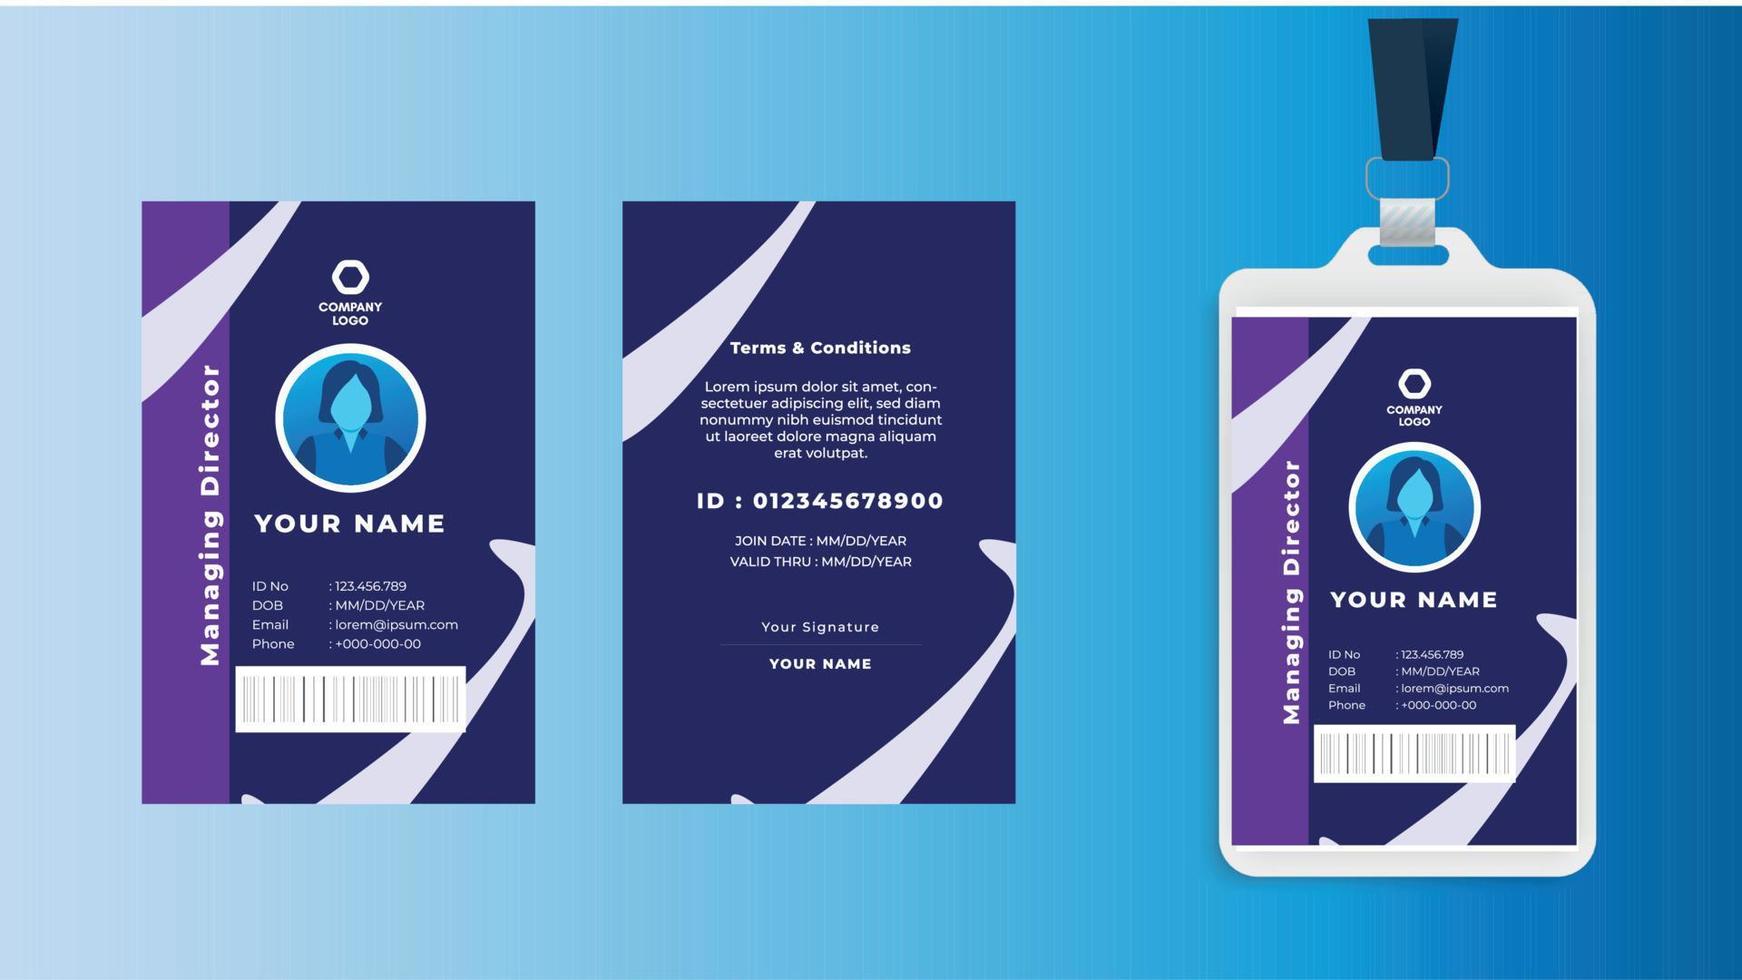 modèle de carte d'identité d'employé bleu et blanc dégradé minimal, carte d'identité professionnelle vecteur